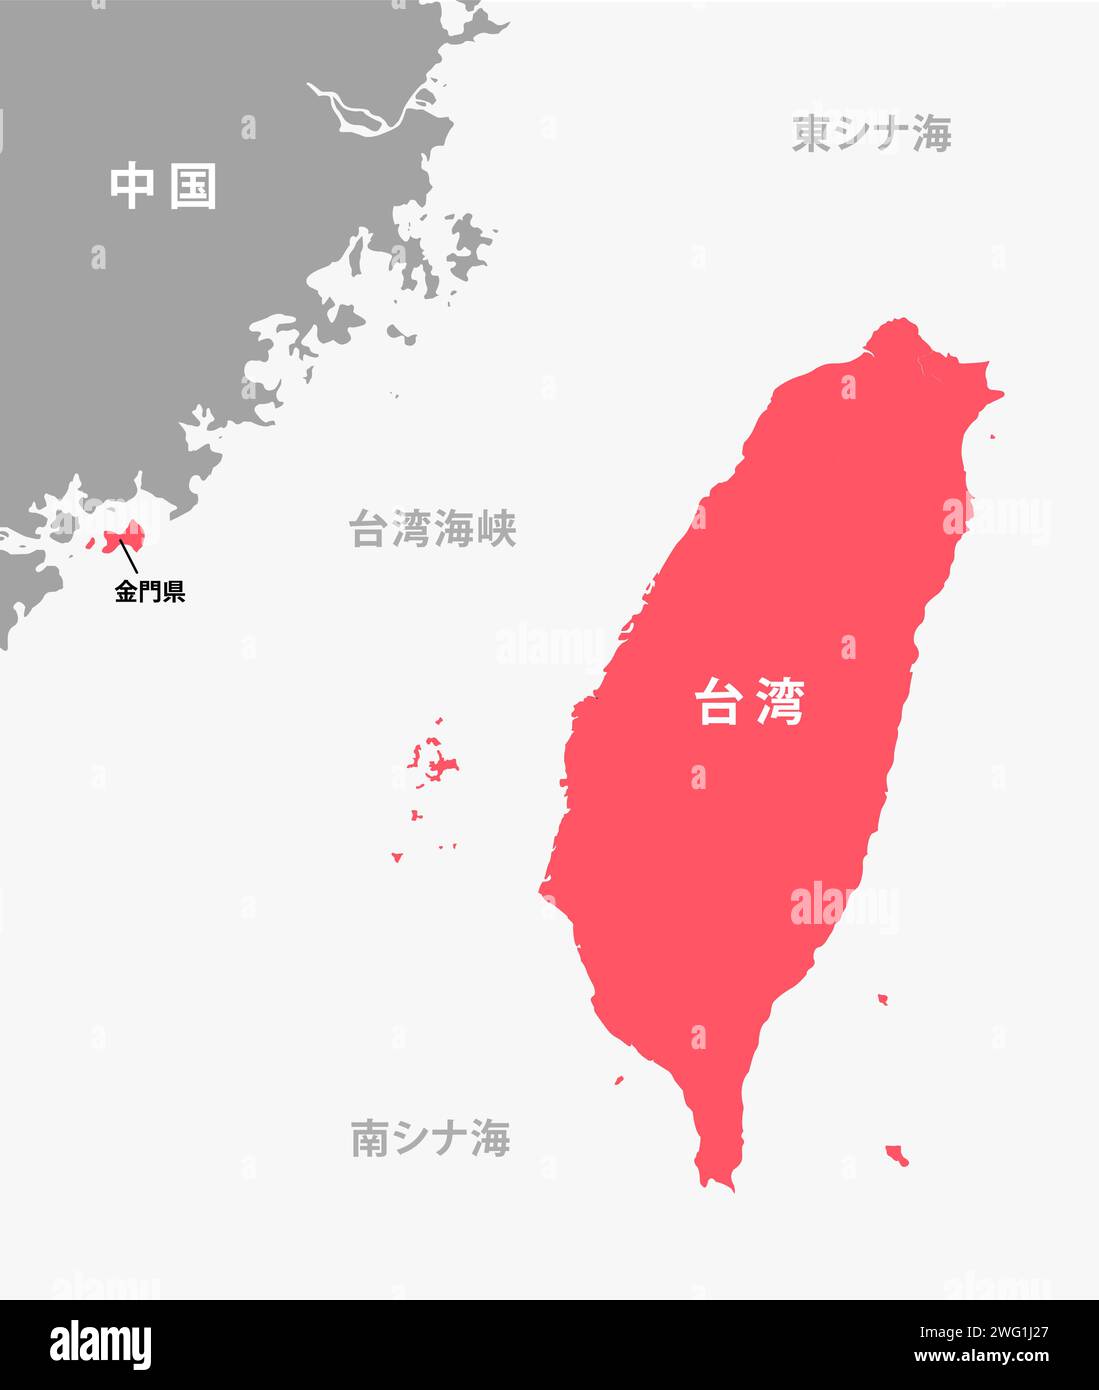 Illustration von Taiwan und Taiwan Strait Map Stock Vektor